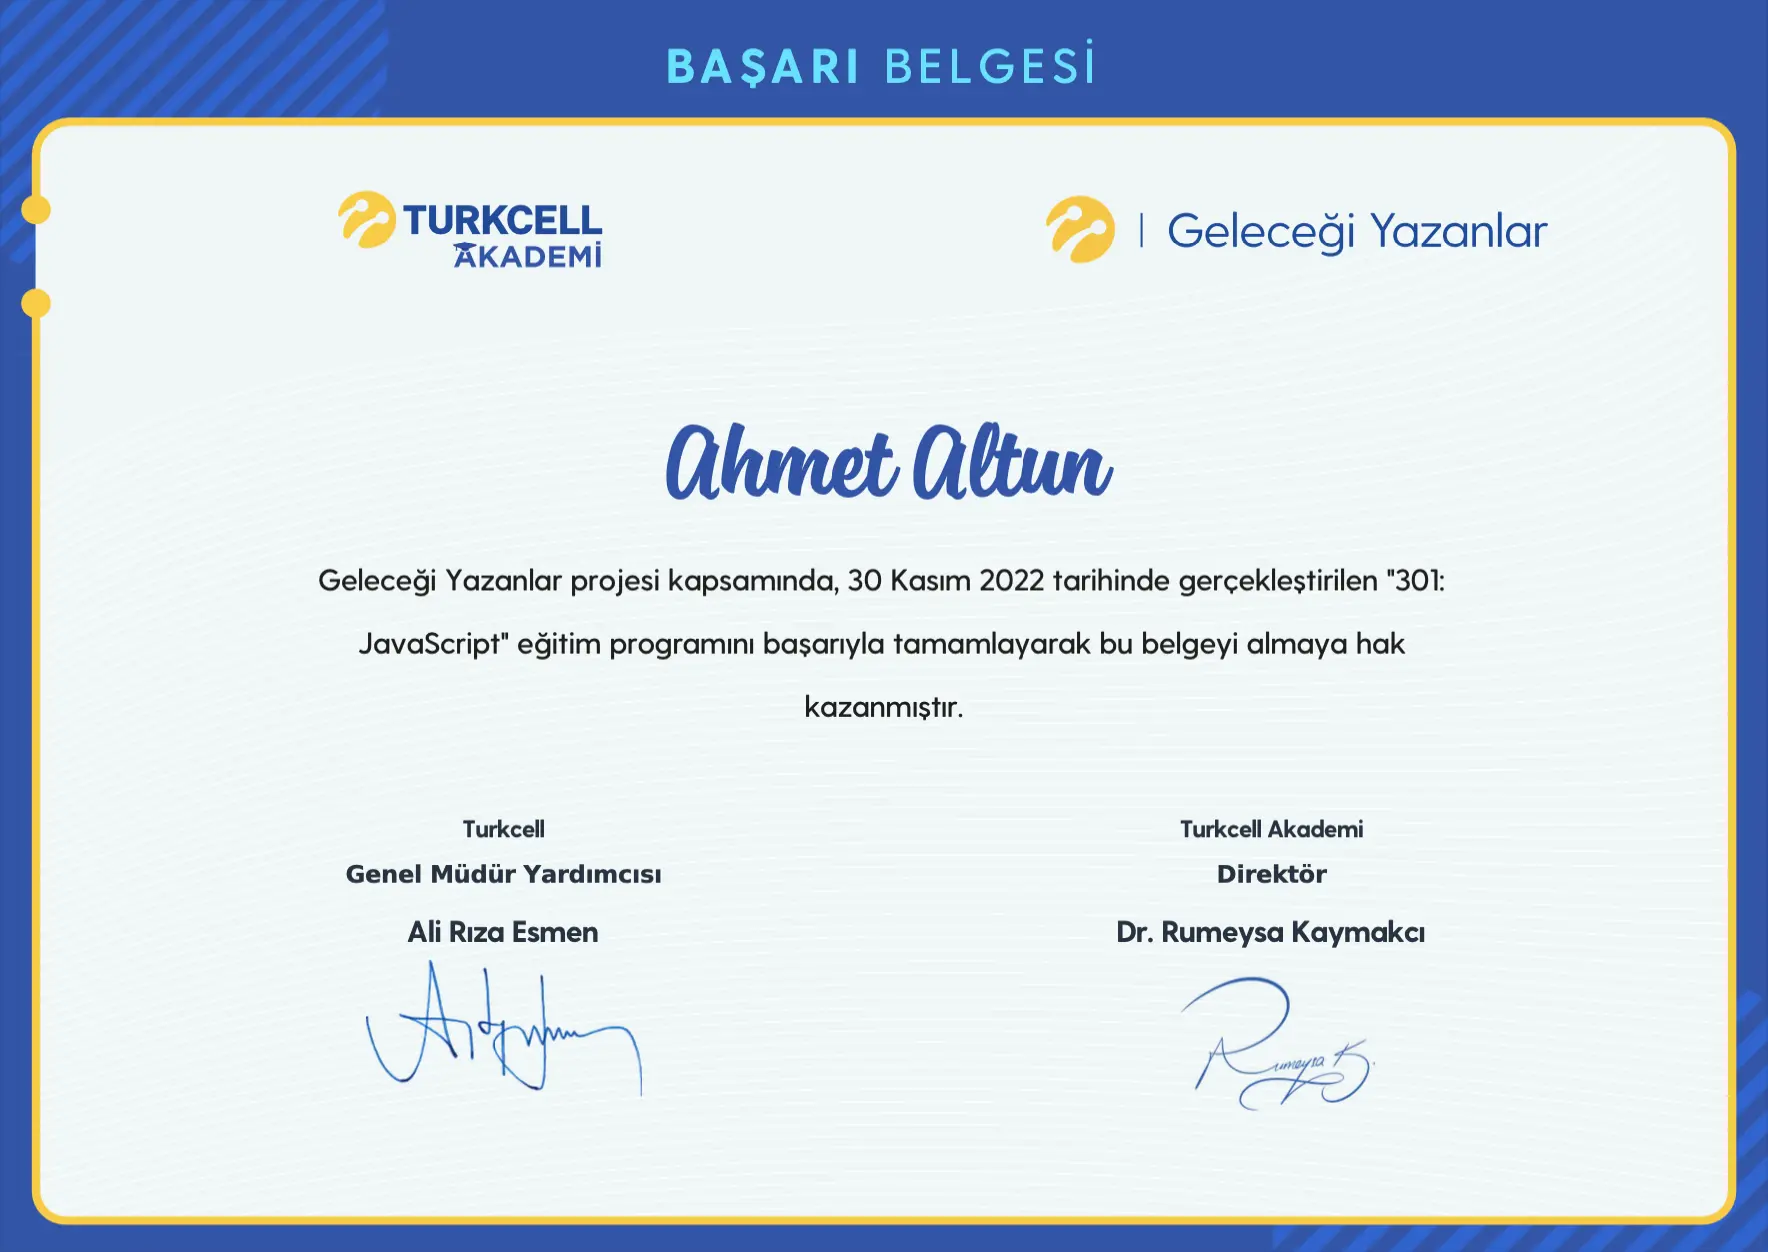 javaScript - Turkcell Akademi - Ahmet Altun Sertifika - ahmetxaltun.com